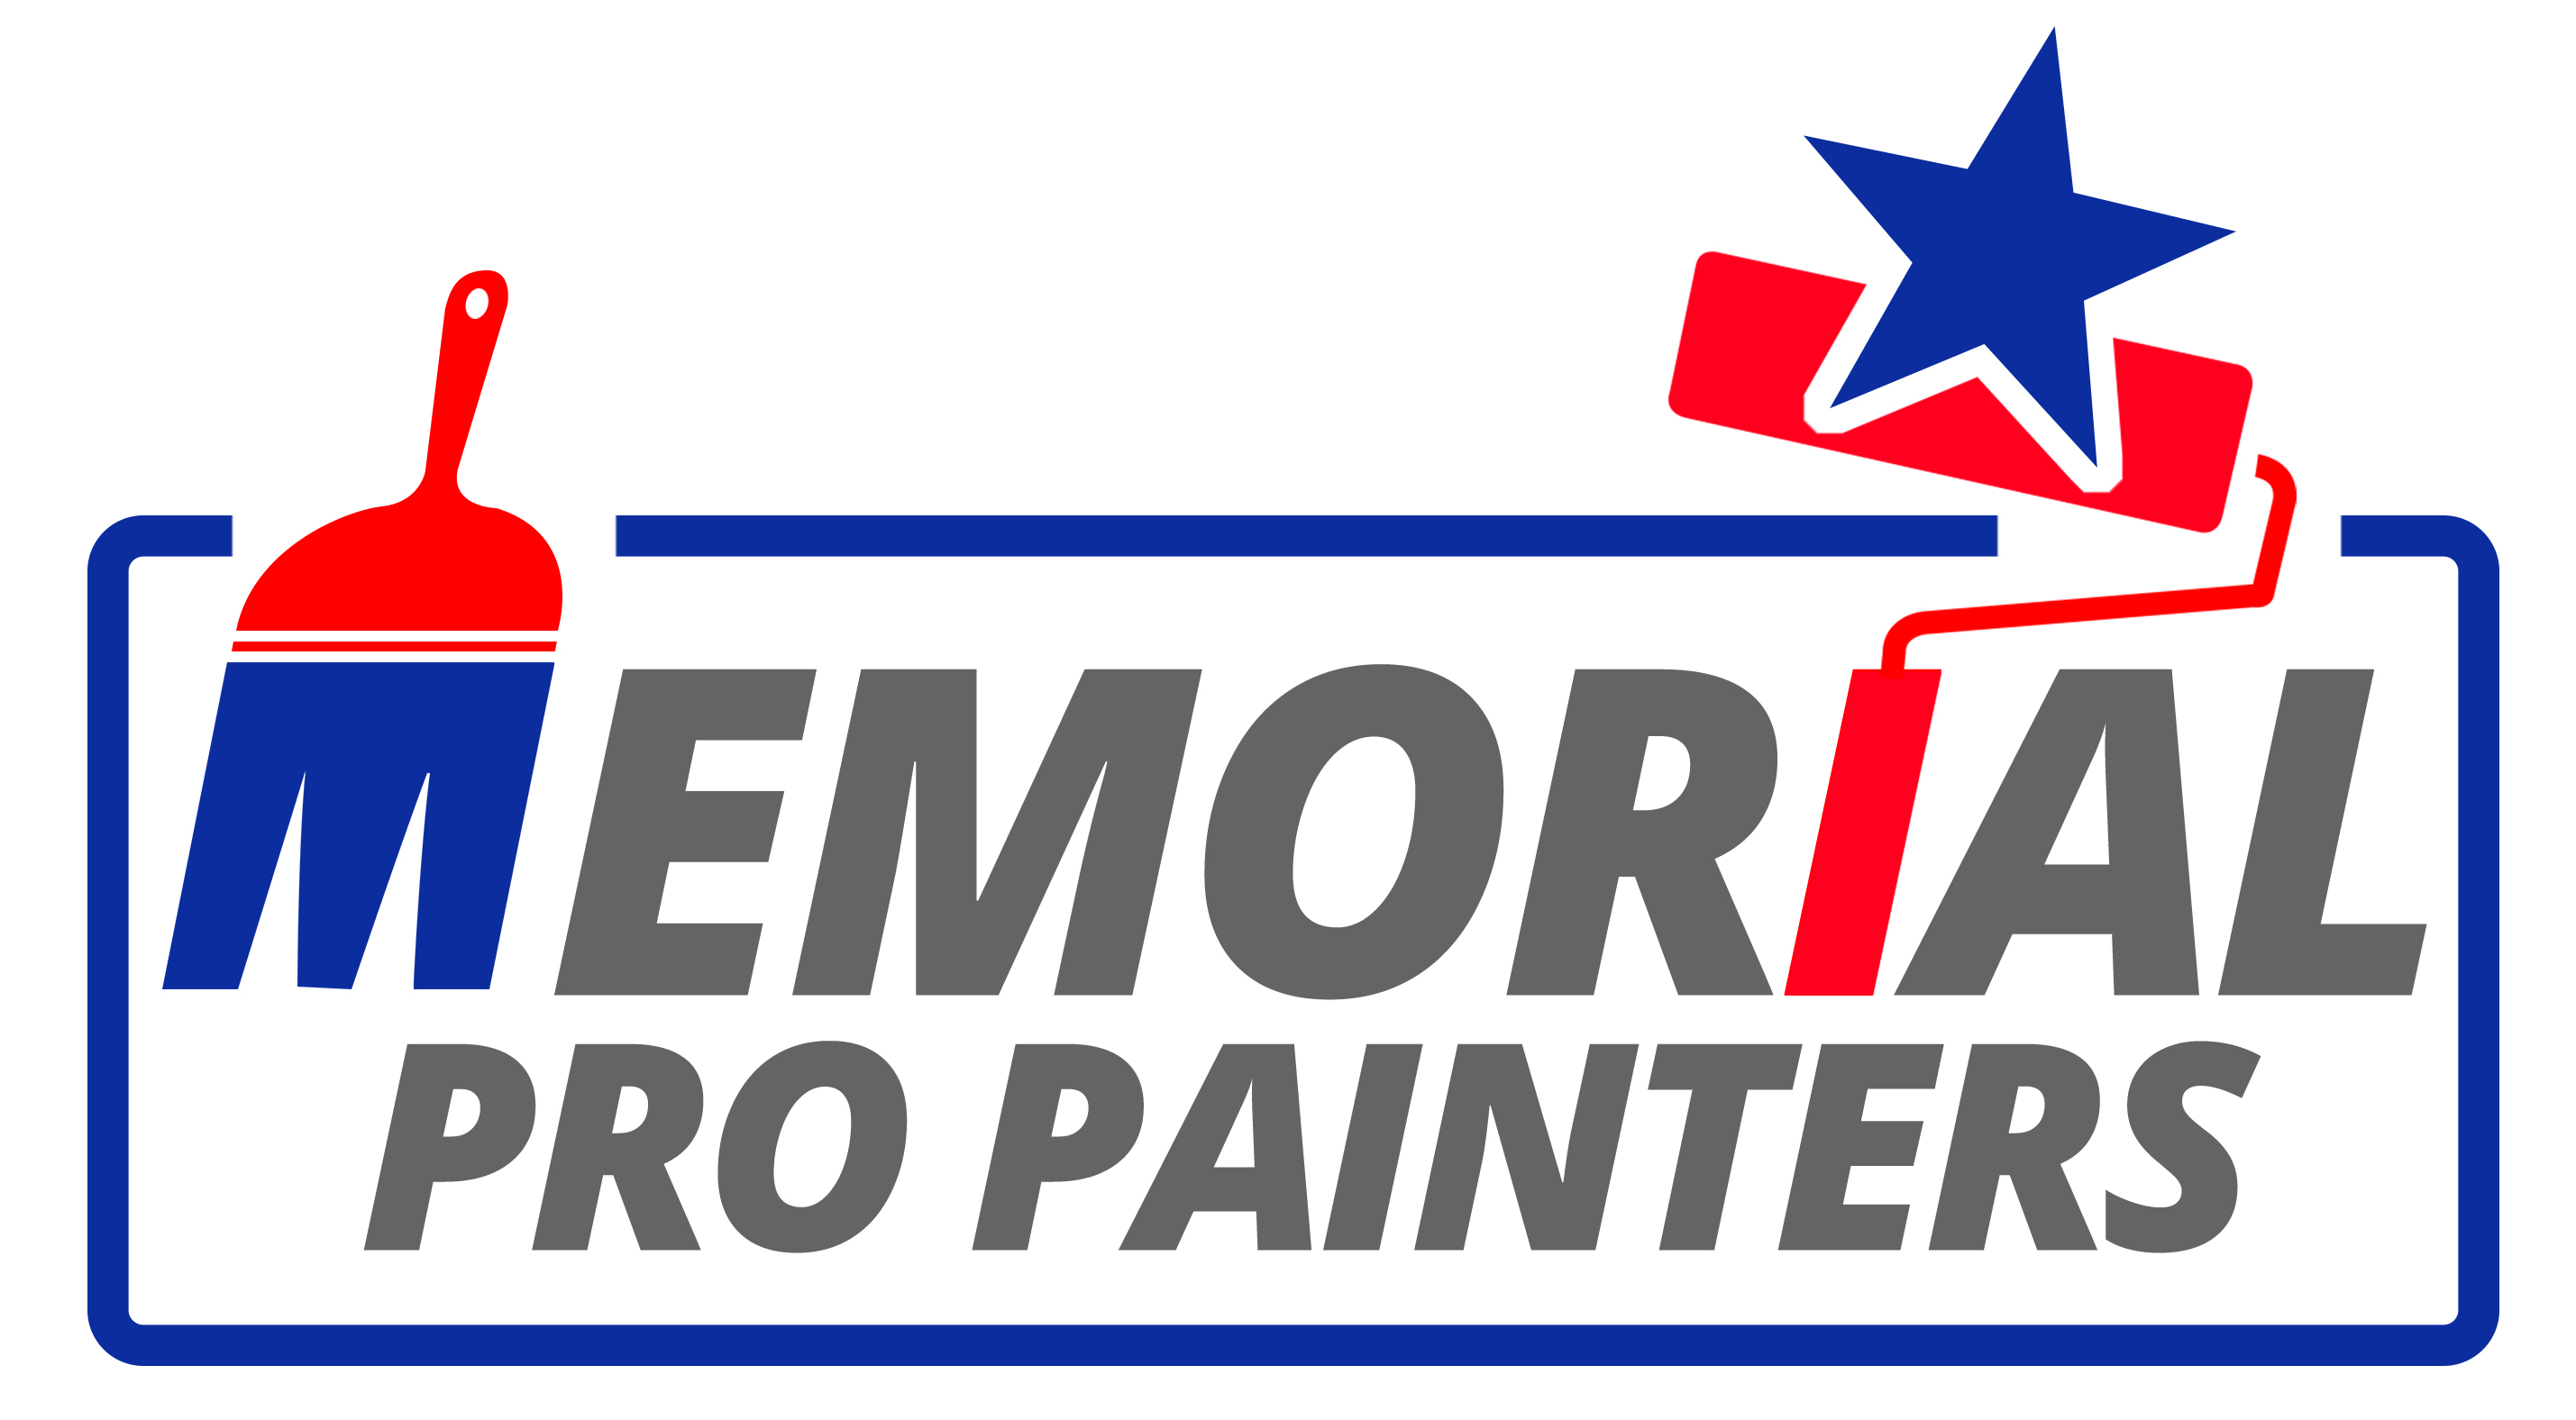 Memorial Pro Painters - PainterChoice.com™